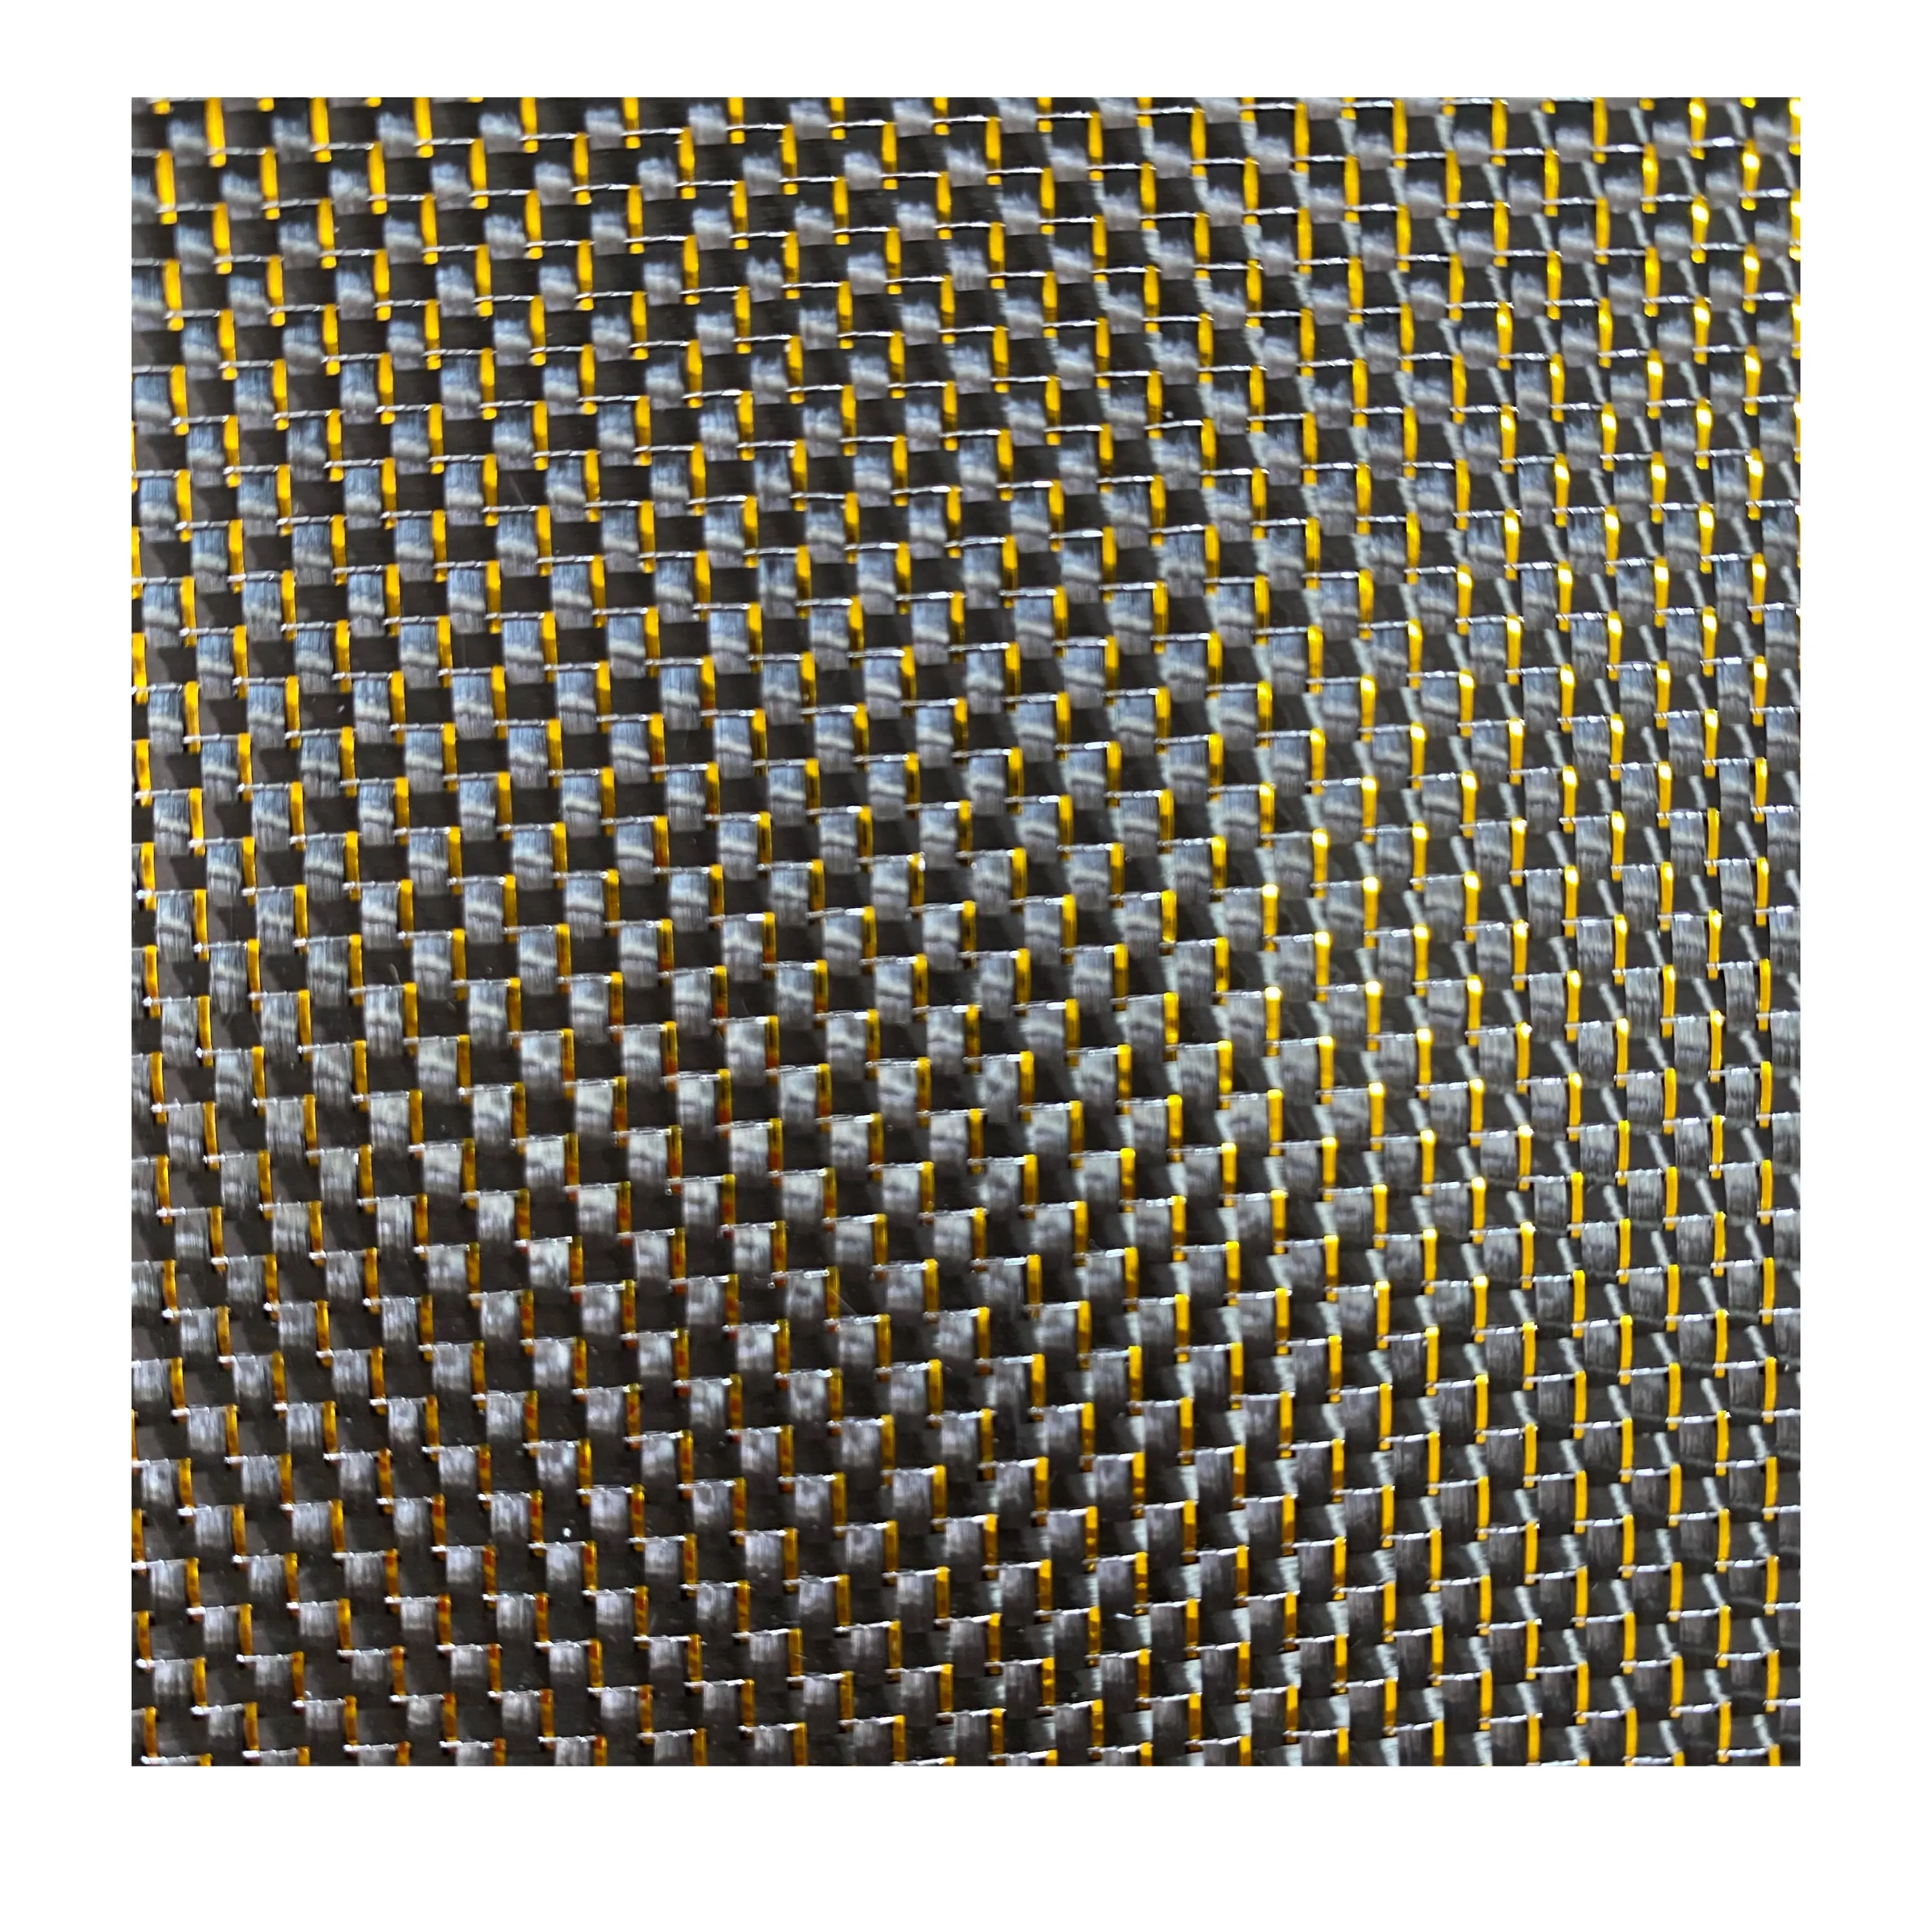 Metallic golden glitter carbon fiber fabric